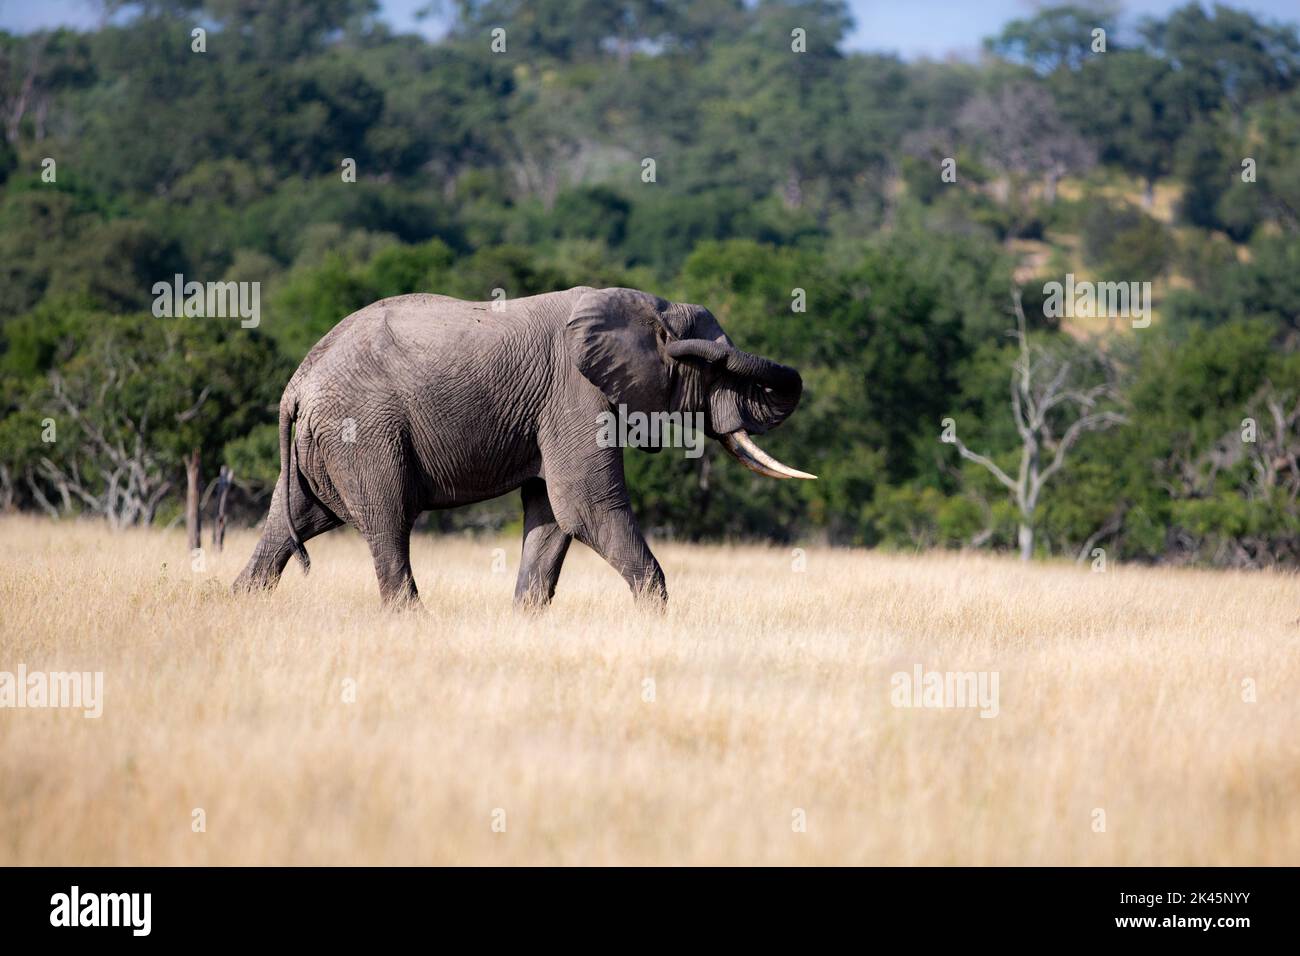 Un elefante, Loxodonta africana, camina a través de hierba larga mientras toca su oreja con su tronco Foto de stock